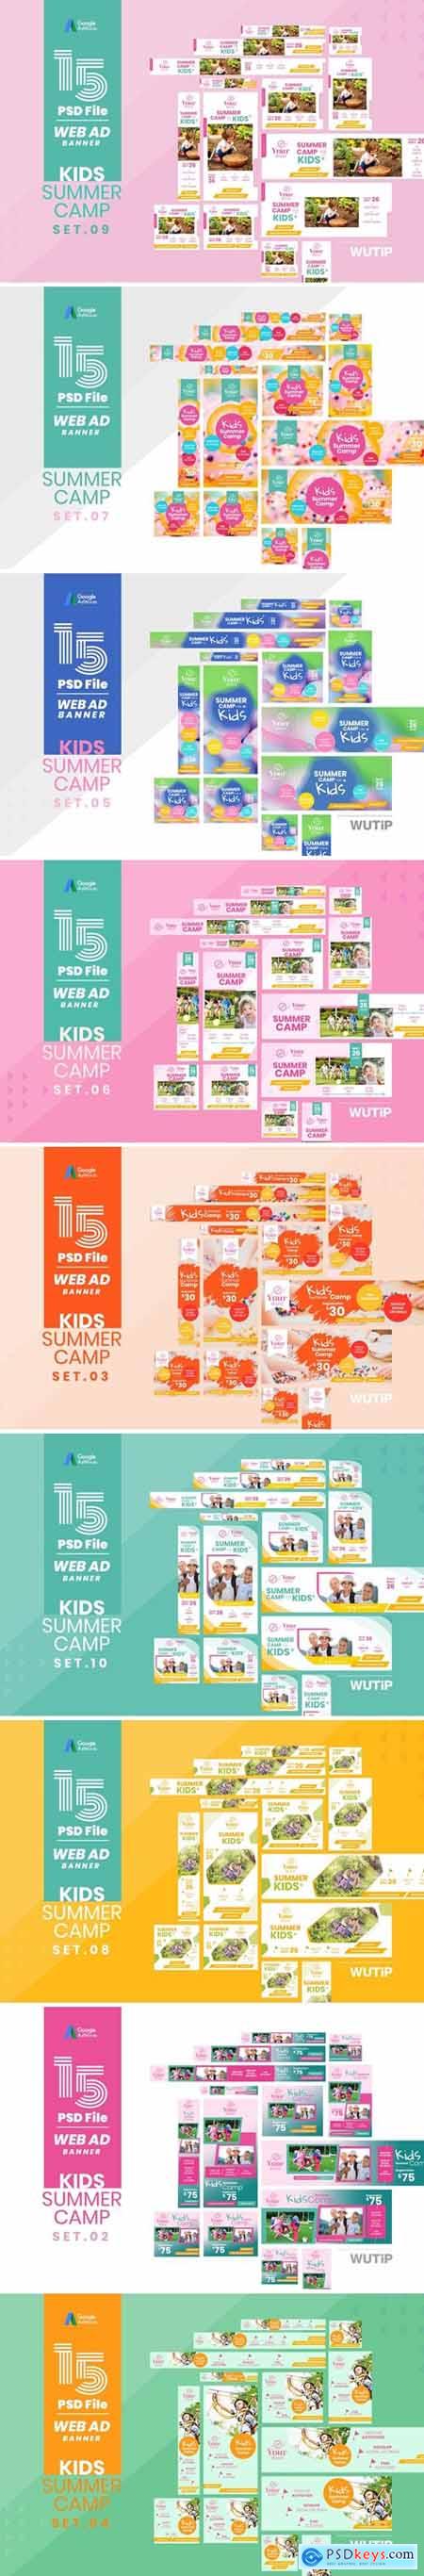 Web Ad Banner-Kids Summer Camp Bundle